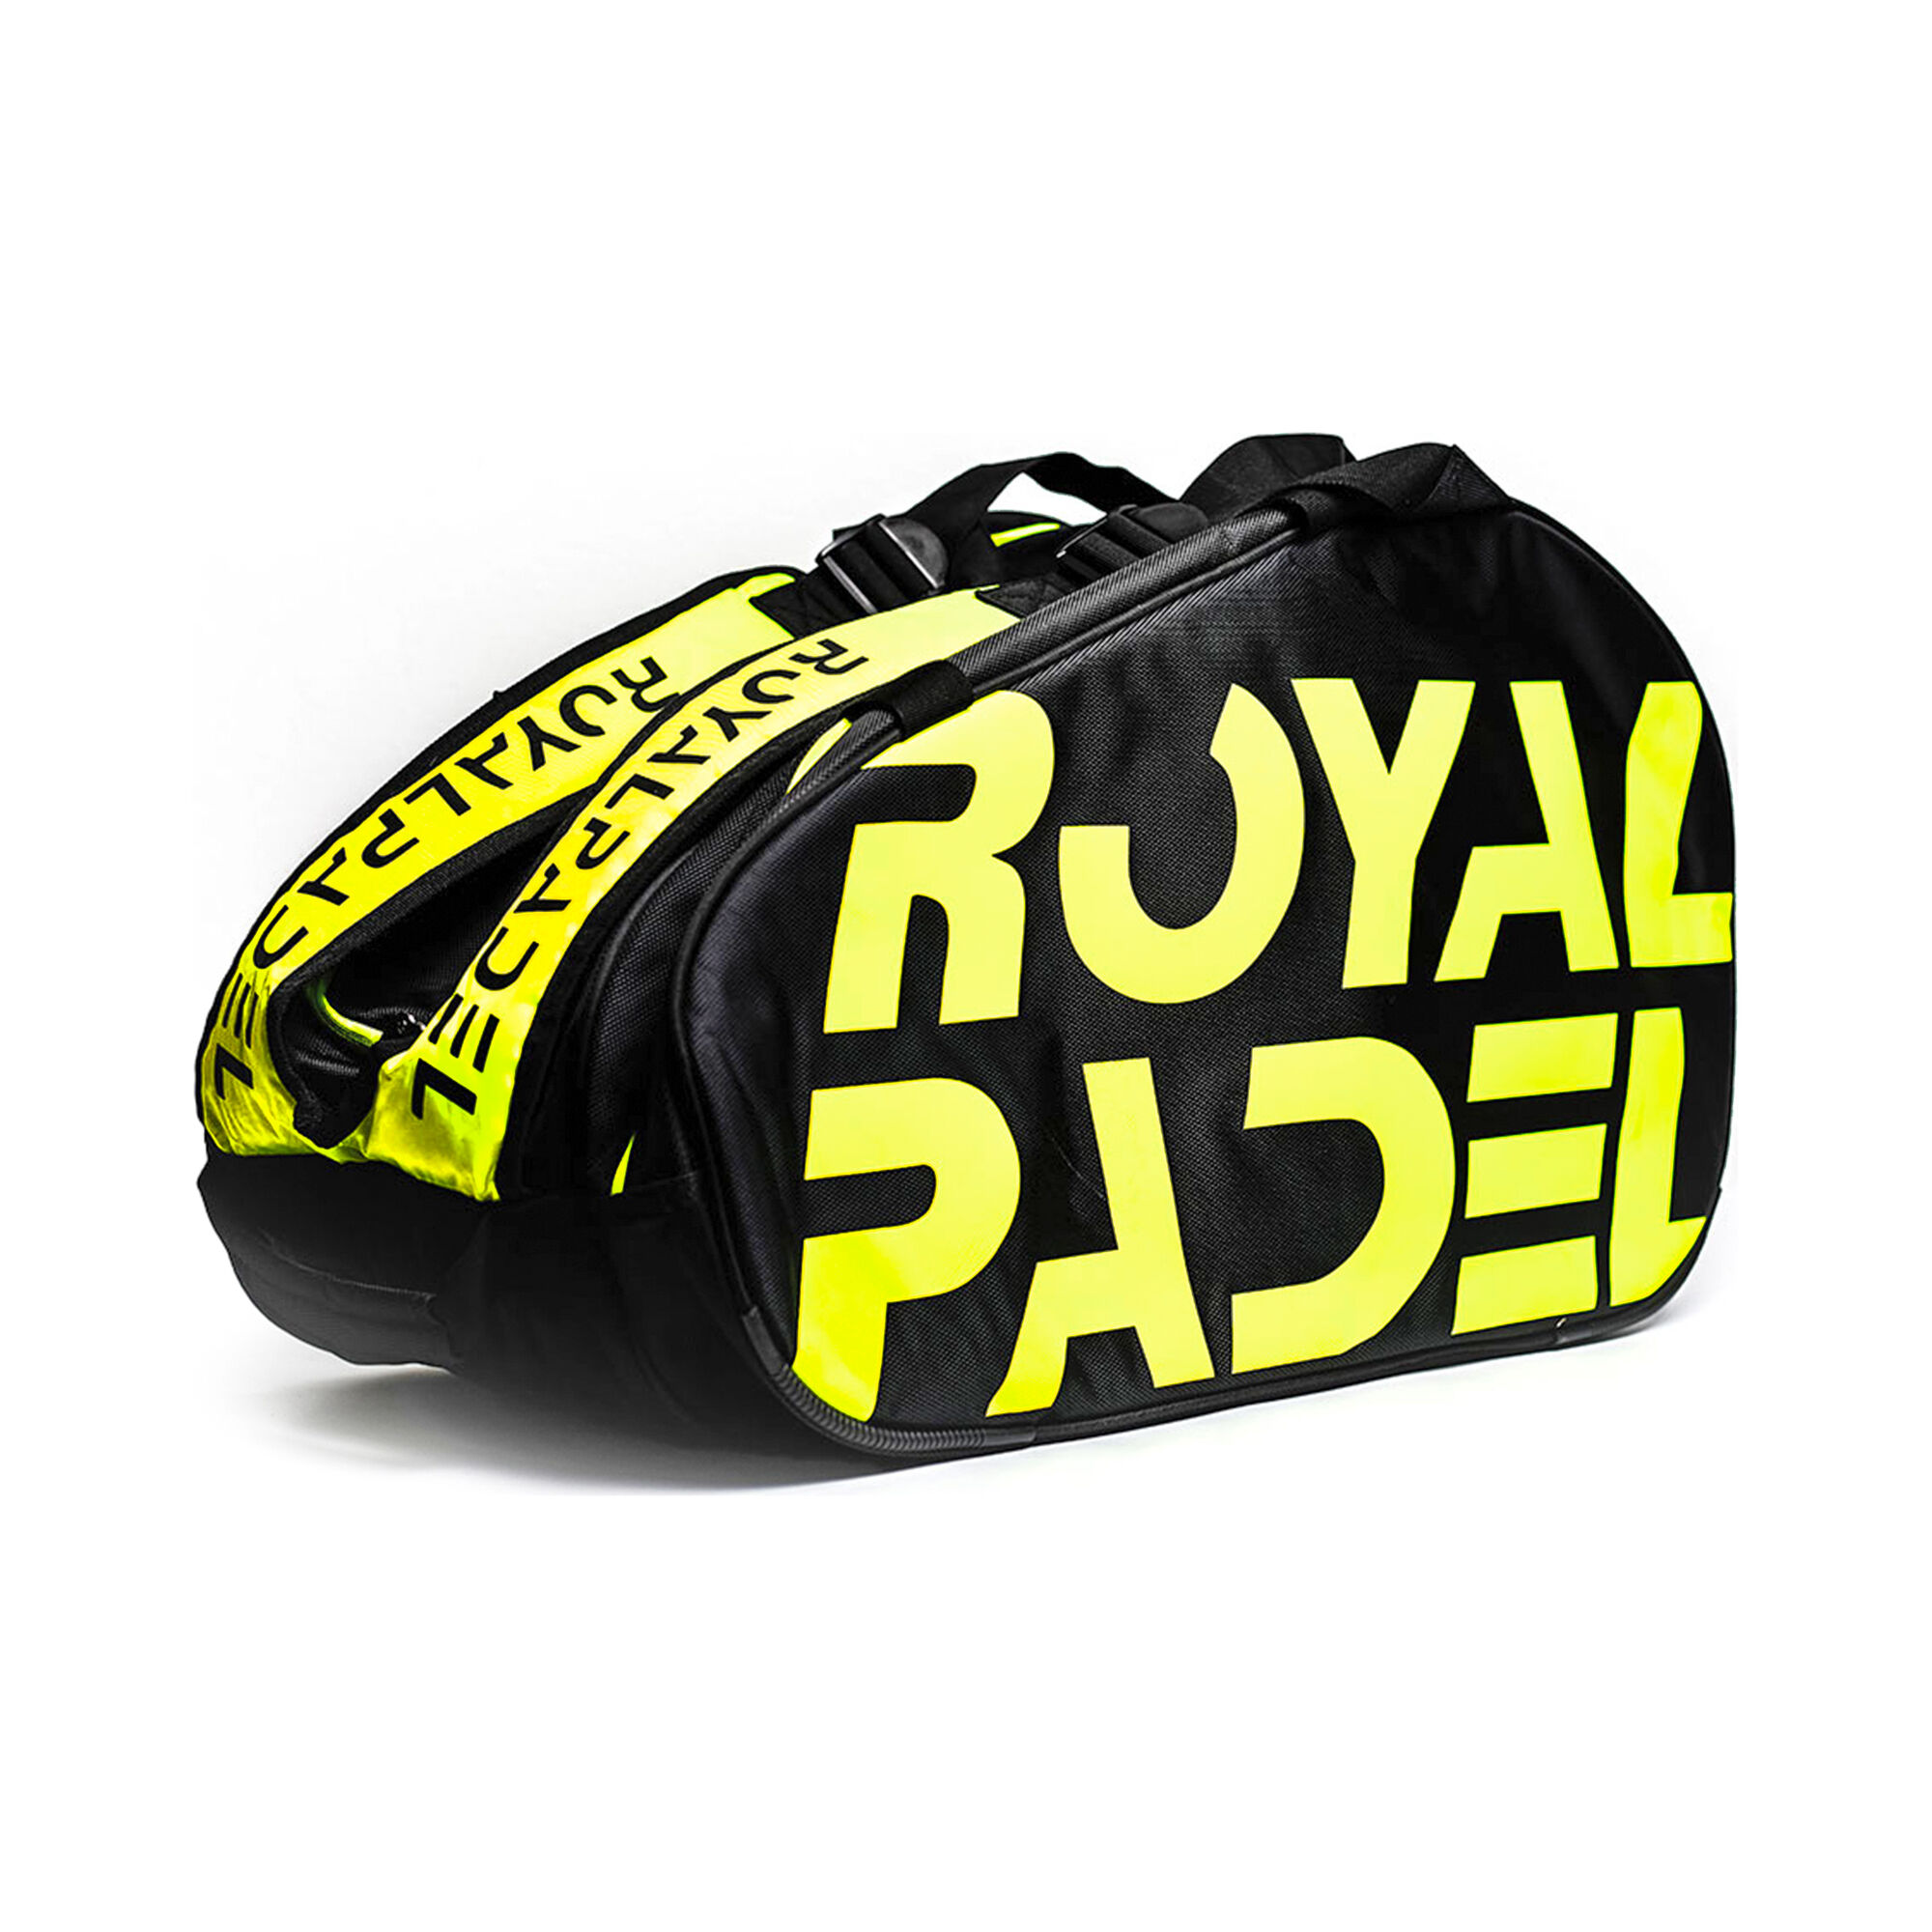 Buy Royal Padel Amarillo Sac De Padel Noir , Jaune online